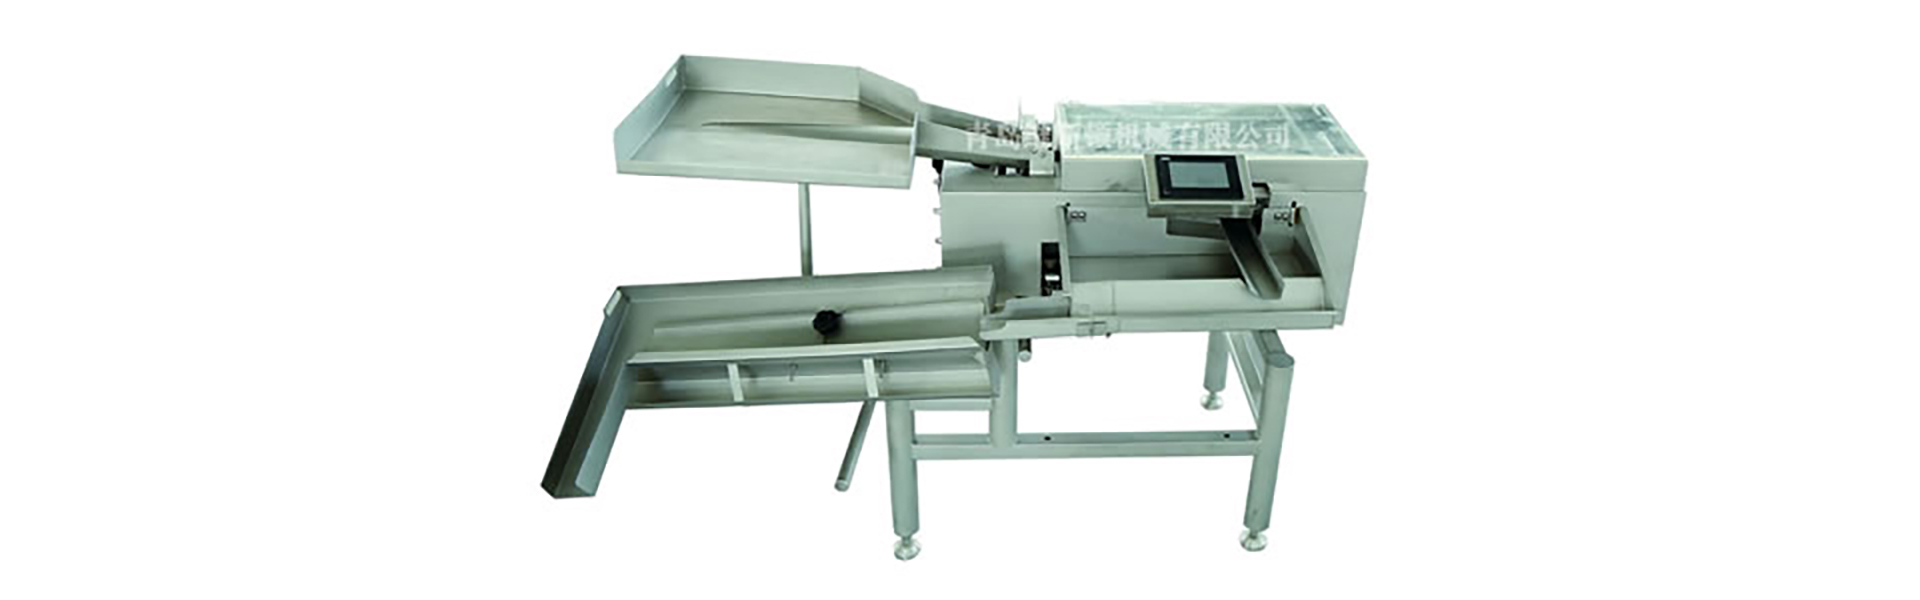 Crusher, Eiwaschmaschine, Eiablagemaschine.,Qingdao Wisdom Machinery Co.,Ltd